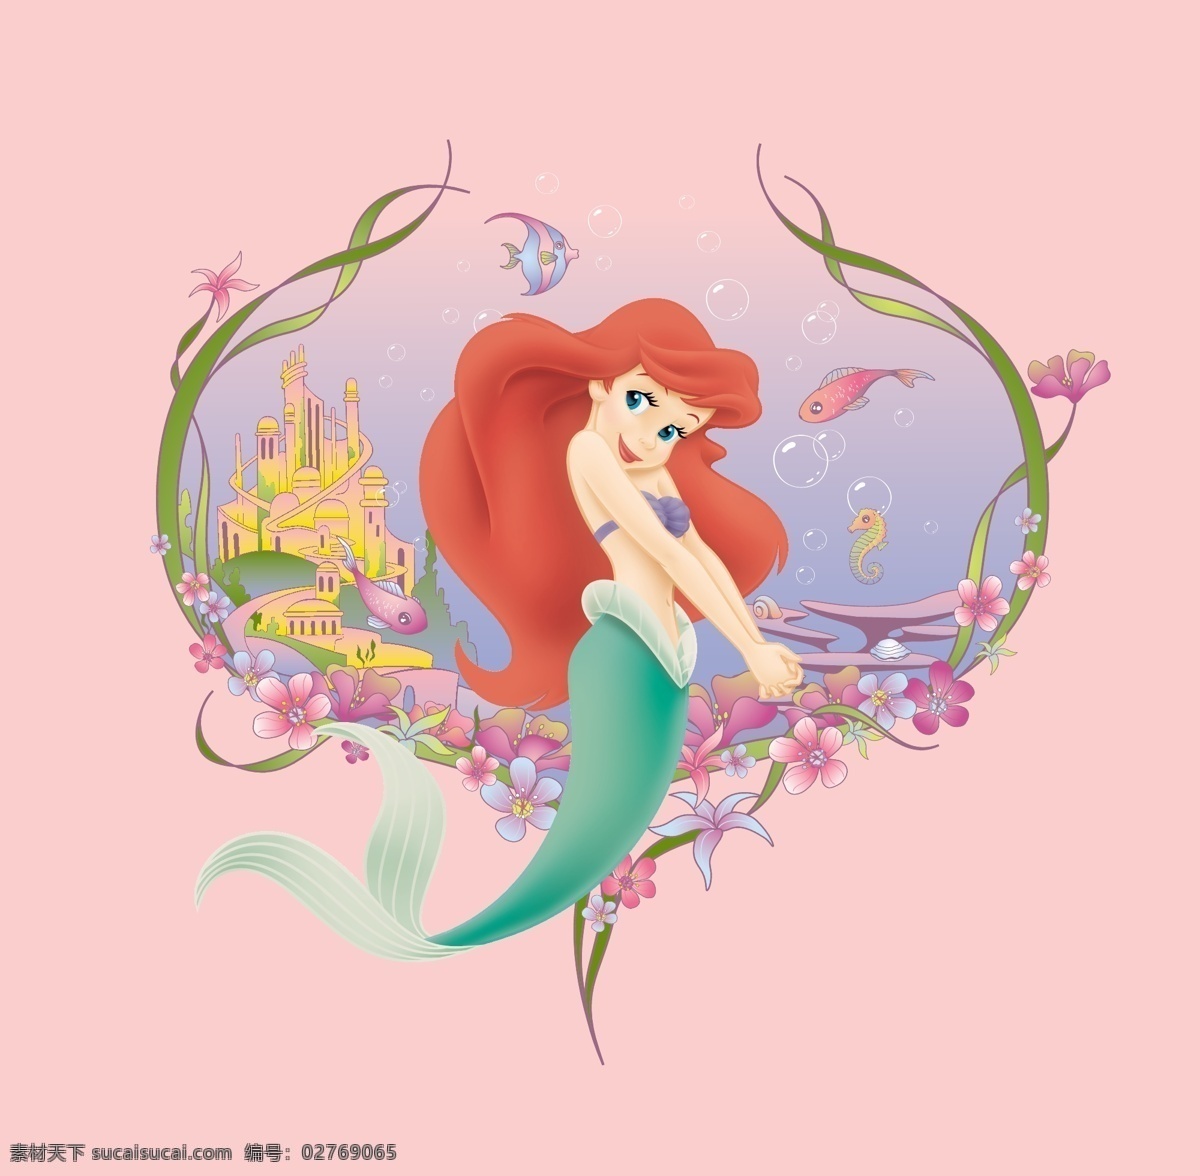 t恤印花 迪士尼 动画 服装 公主 海的女儿 卡通 卡通设计 印花 女装 童装 童话 美女 少女 女孩 小人鱼 美人鱼 矢量